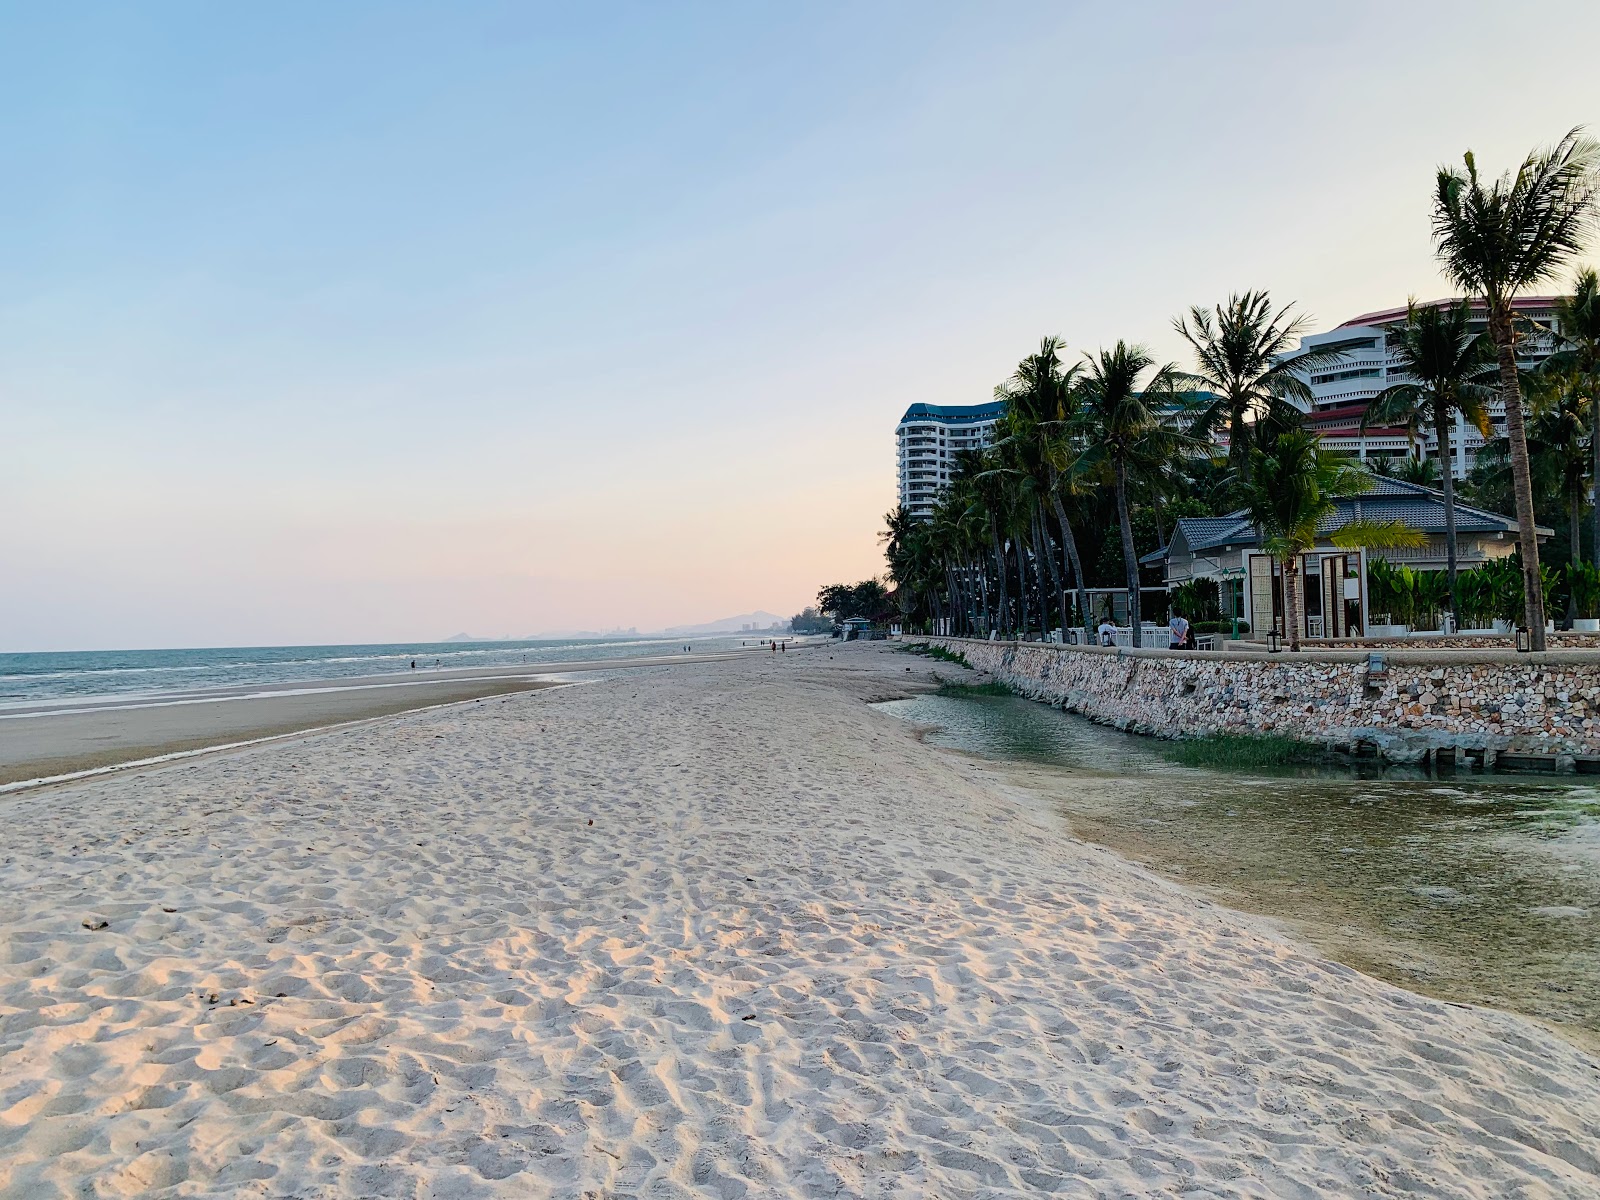 Foto de Hua Hin Dusit Beach - lugar popular entre los conocedores del relax